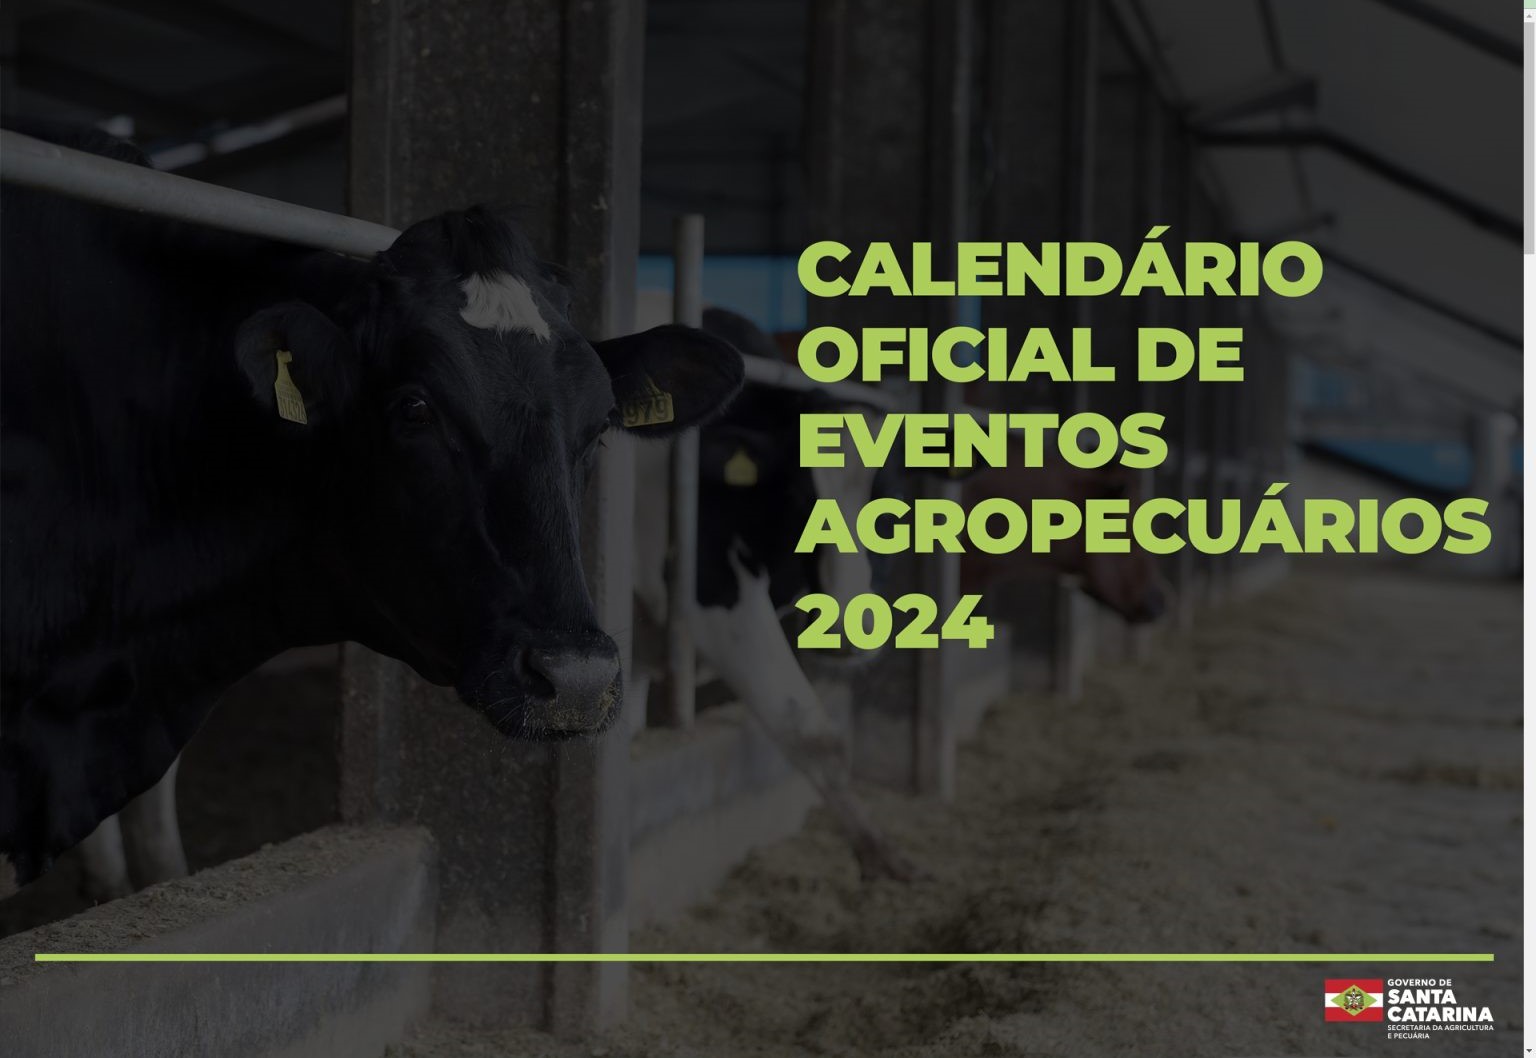 Mais de 400 eventos agropecuários estão no calendário oficial de 2024 em Santa Catarina